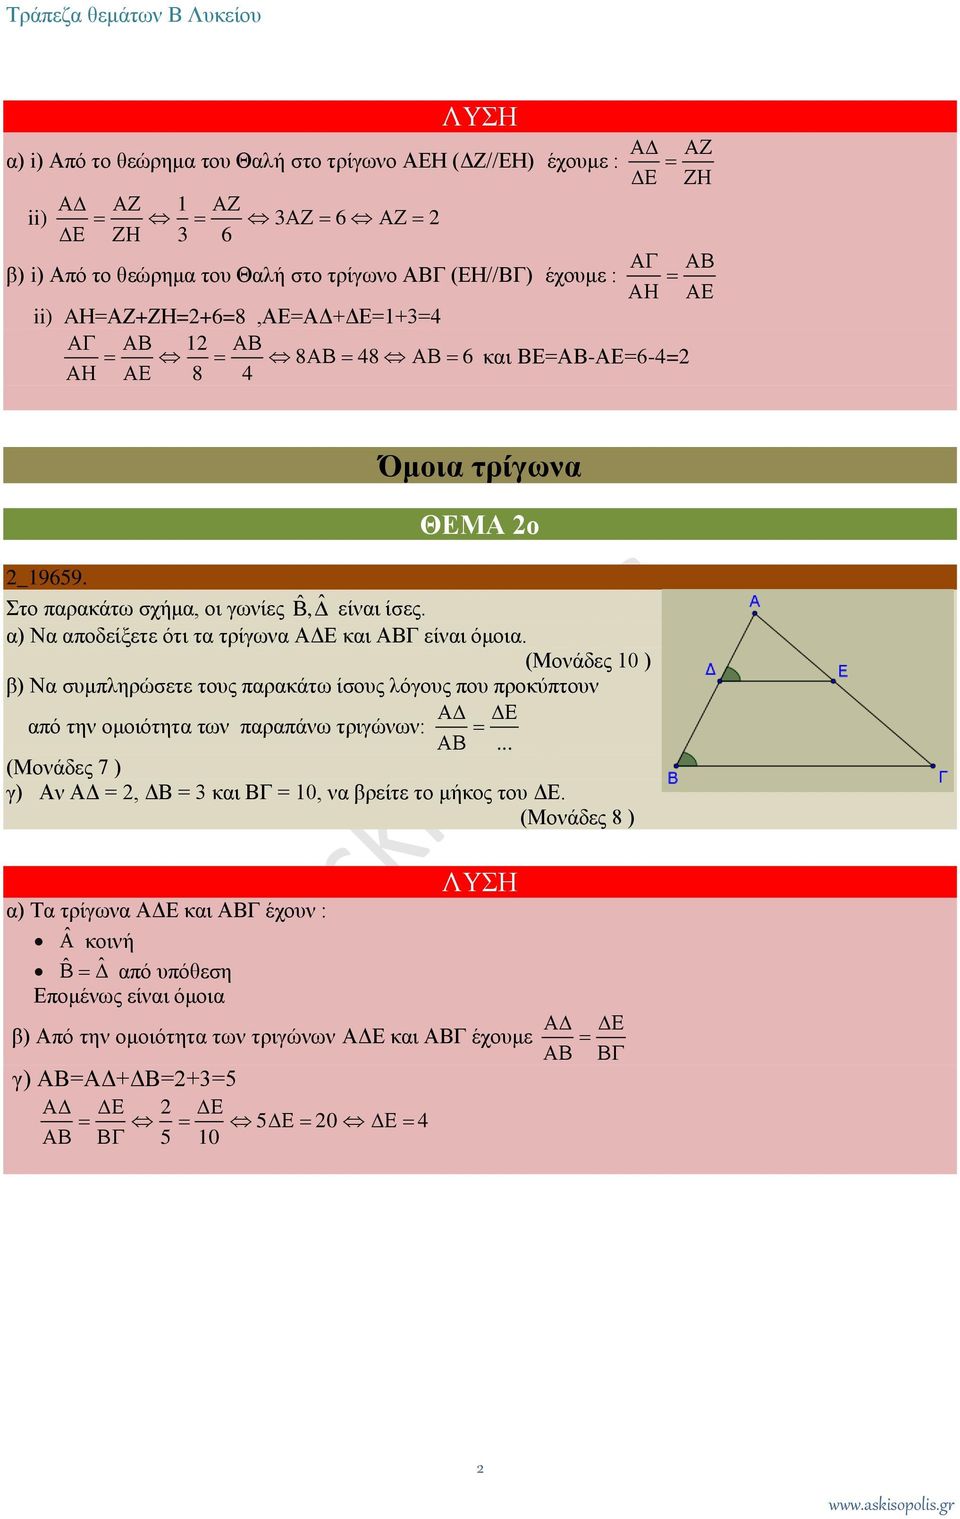 (Μονάδες 10 ) β) Να συμπληρώσετε τους παρακάτω ίσους λόγους που προκύπτουν από την ομοιότητα των παραπάνω τριγώνων:.